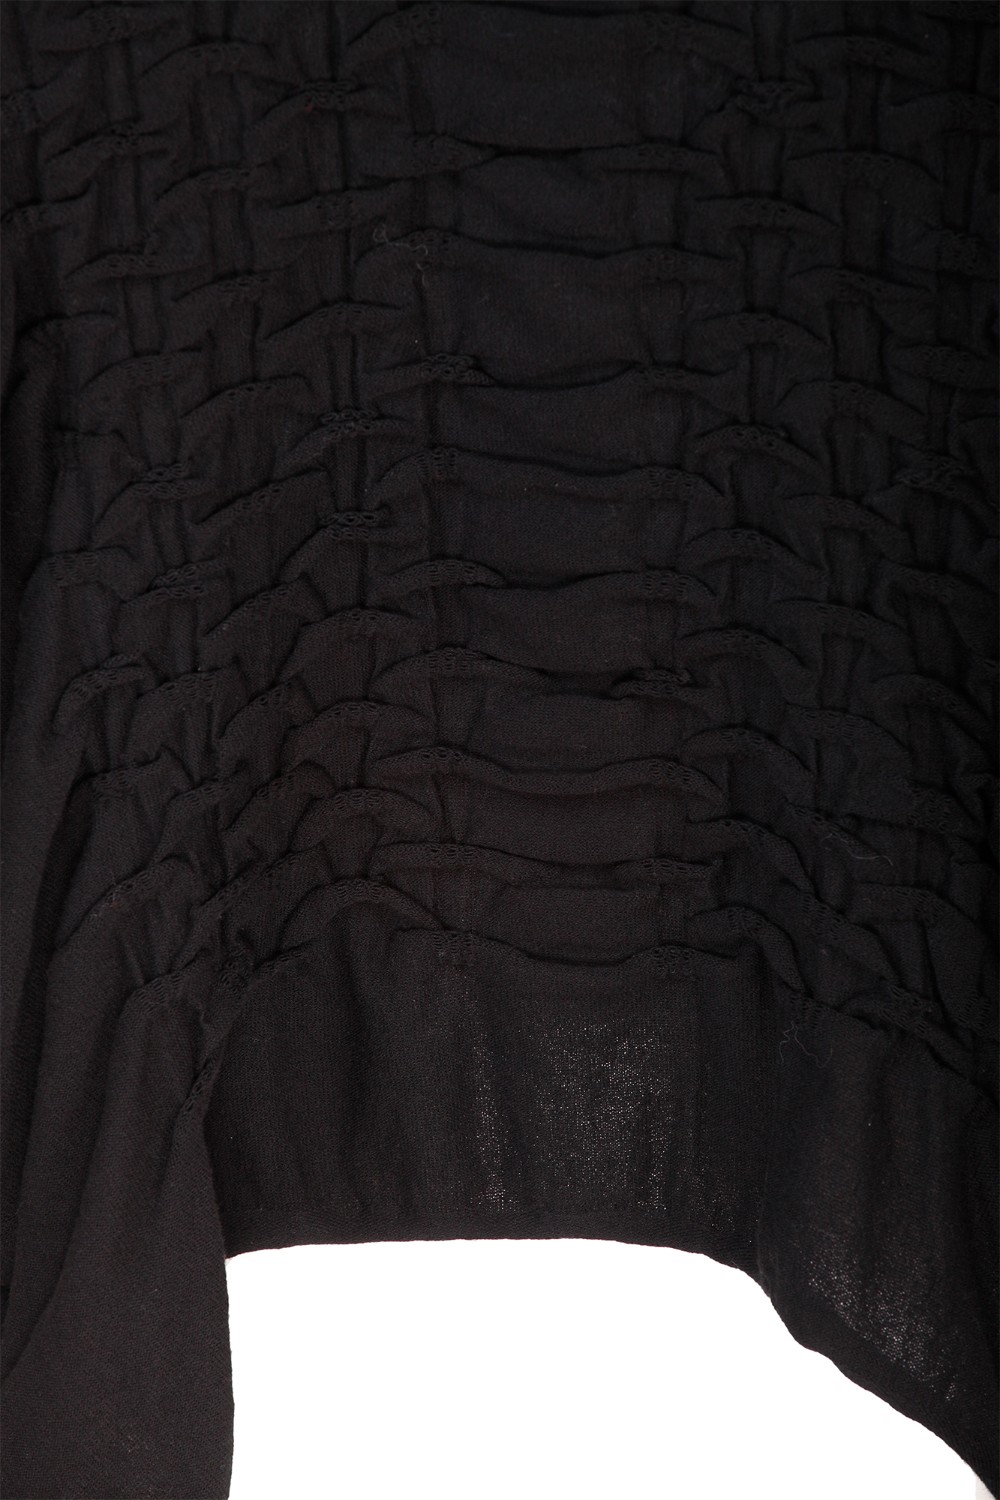 shop KNIT KNIT Saldi Abito: Knit Knit abito in cotone con drappeggio .
Maniche corte.
Scollo rotondo.
Oversize fit.
Composizione: 100% cotone.
Made in Italy.. CRK9-N number 2627268